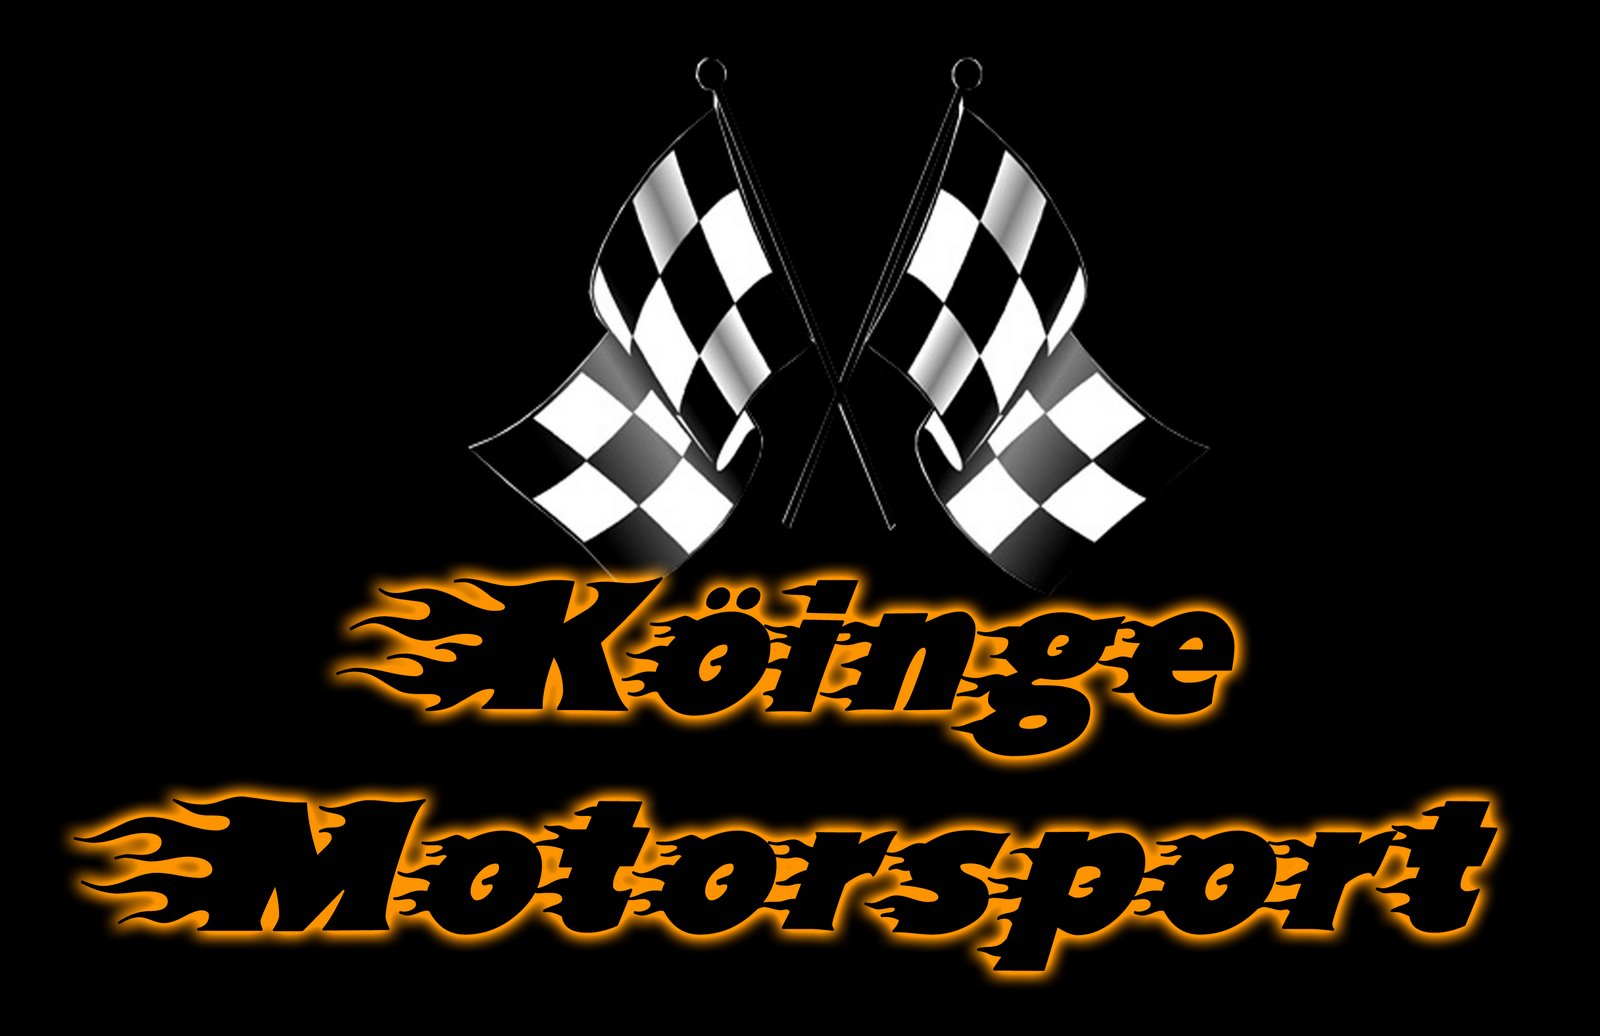 Köinge Motorsport